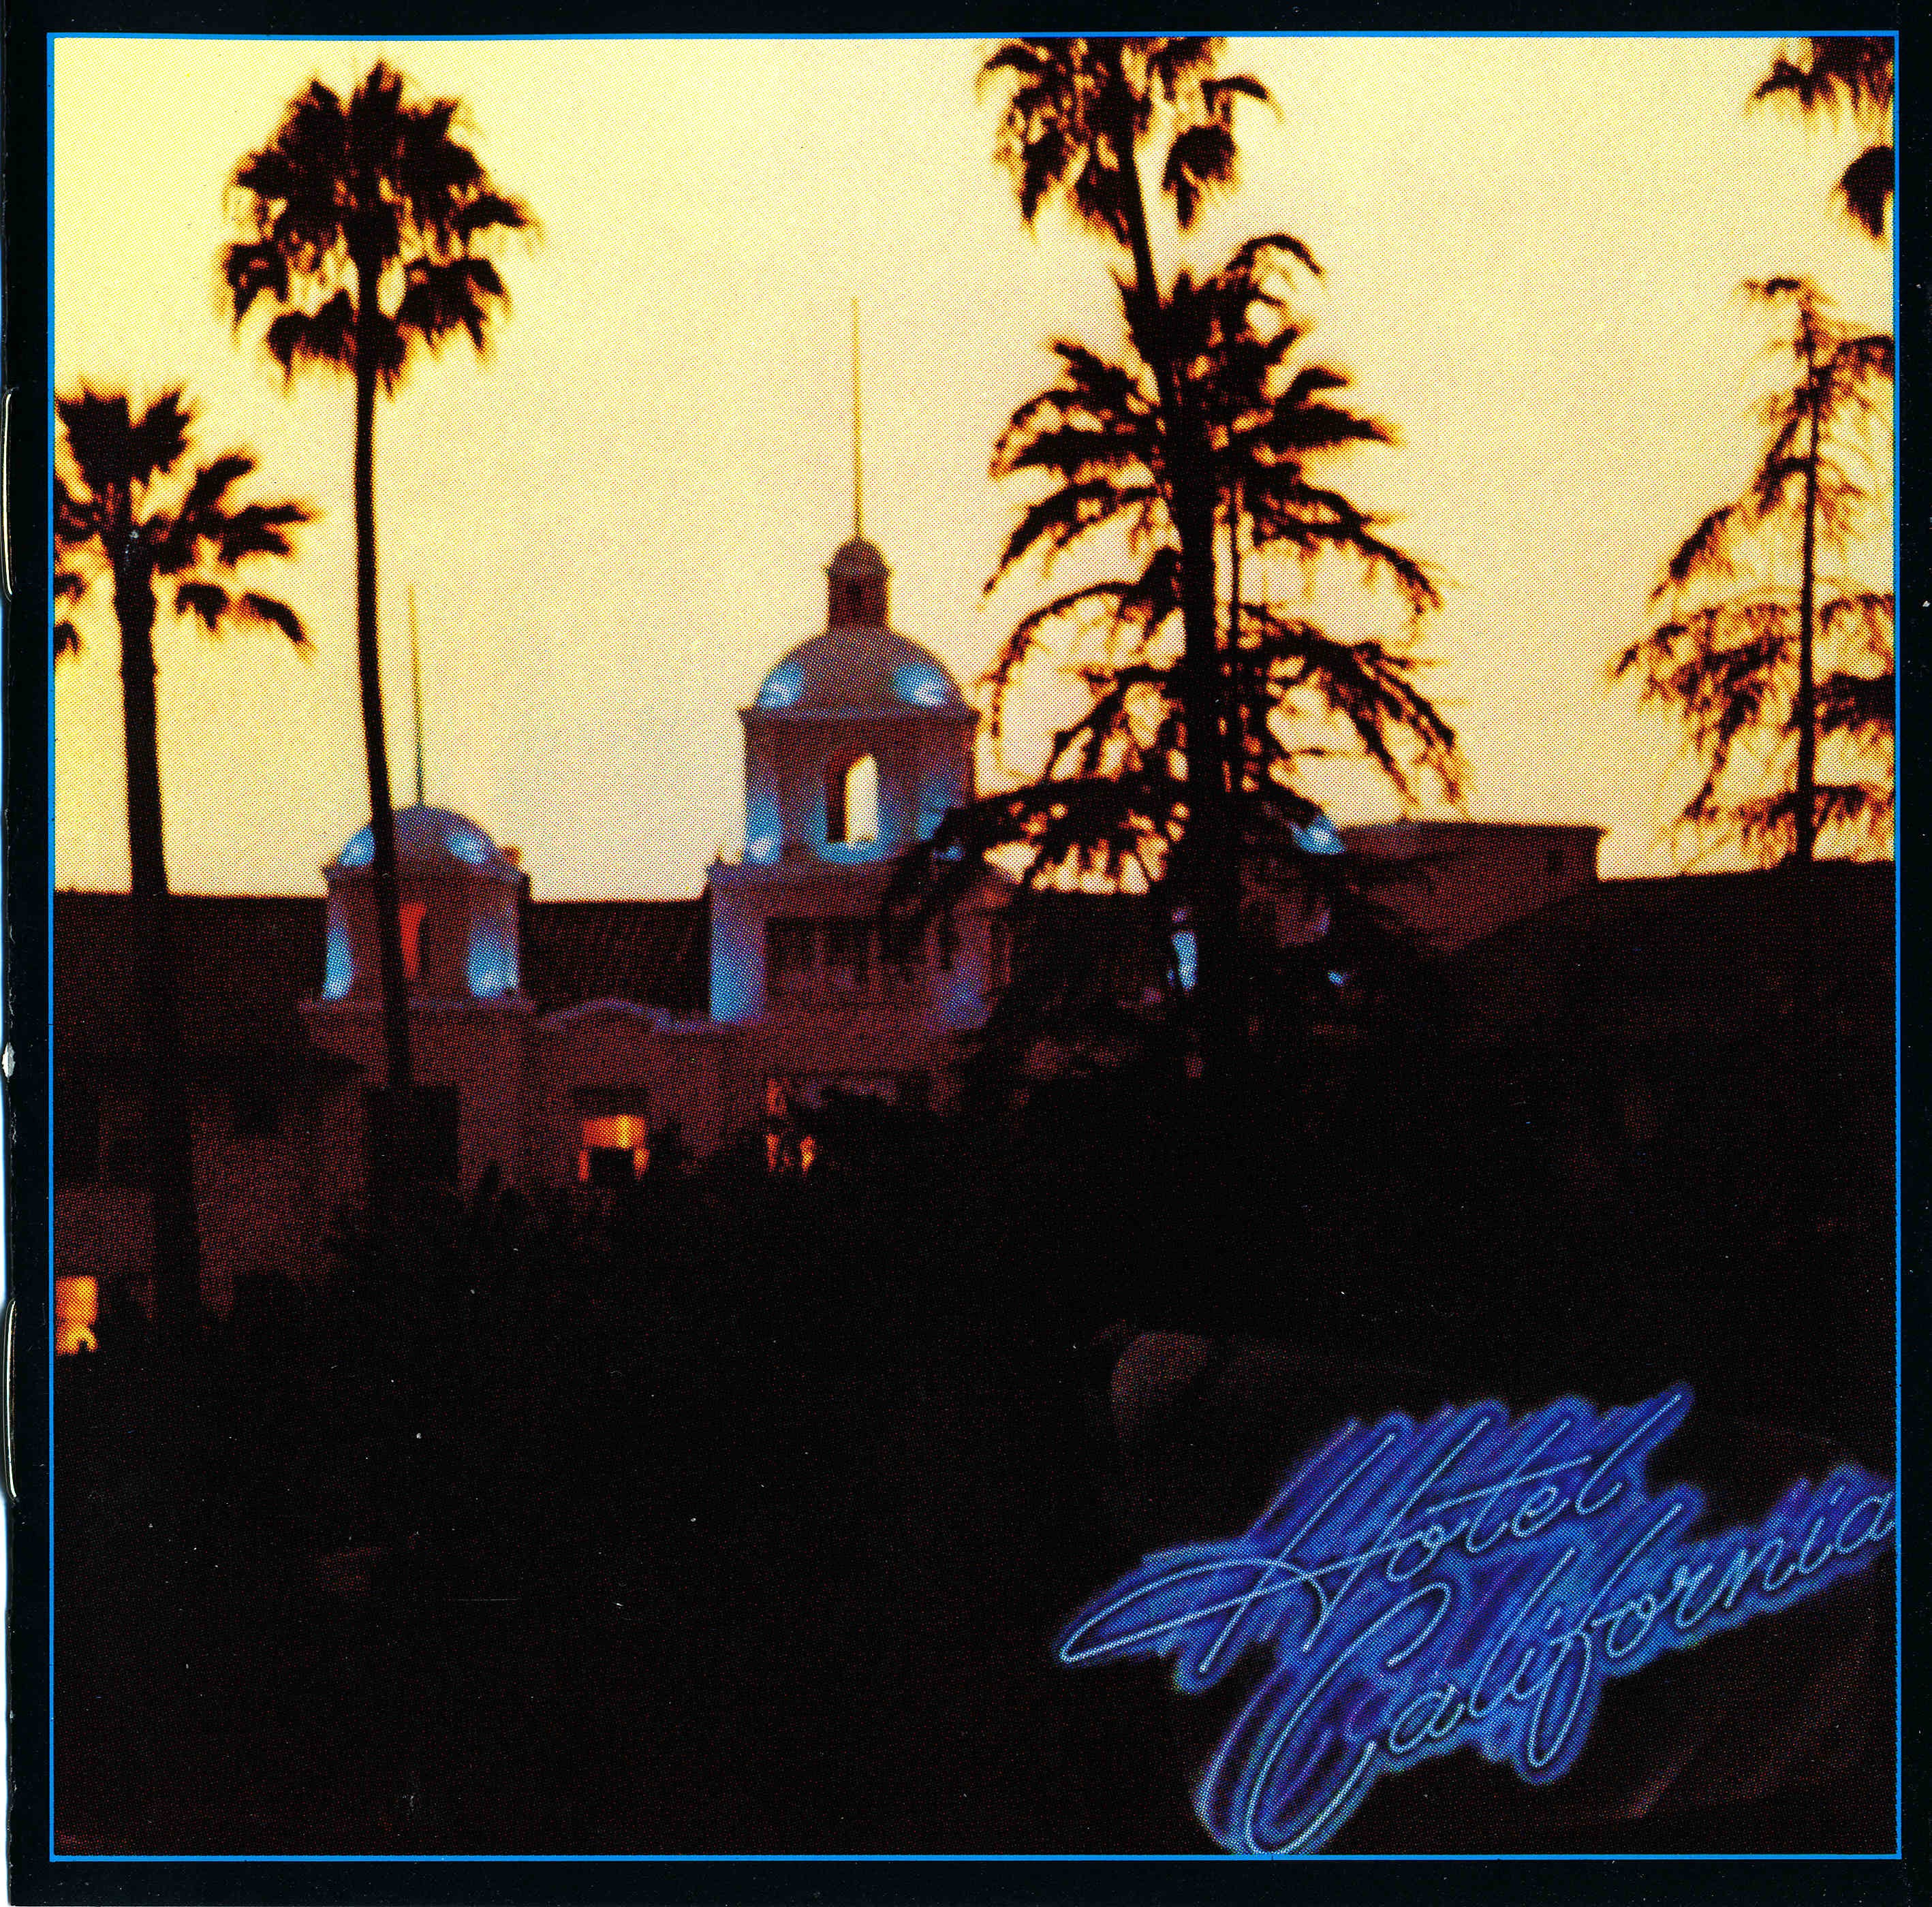 ซีดีเพลง CD 1976 - Eagles - Hotel California ชุดที่โด่งดัง masterpiece,ในราคาพิเศษสุดเพียง159บาท